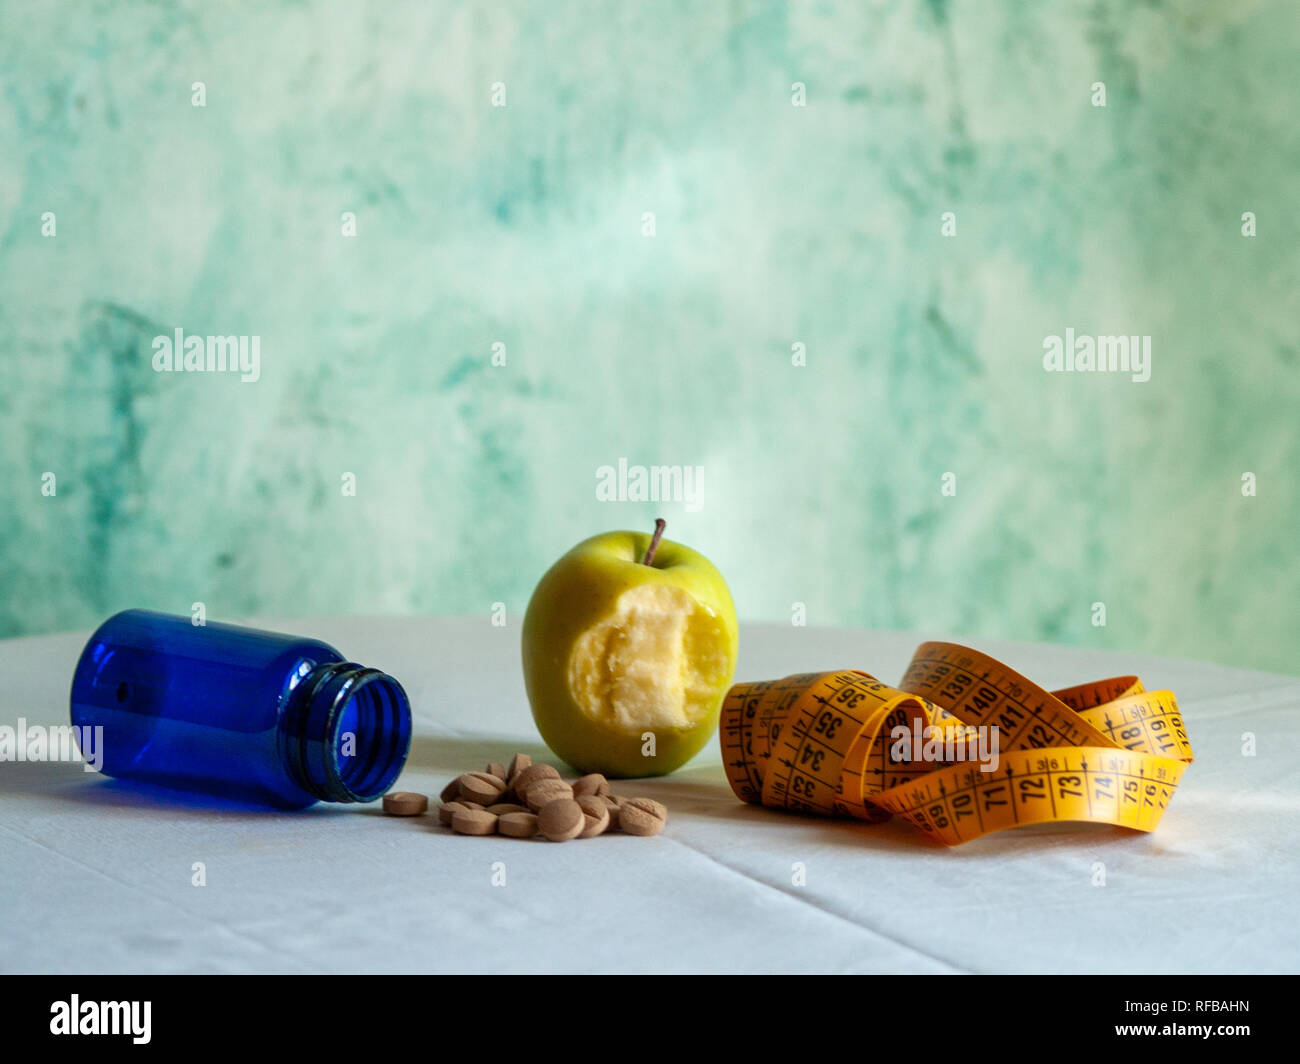 Eine gebissen Apple, ein Maßband und einem blauen Container mit pflanzenfasern Pillen auf einem Tisch Stockfoto